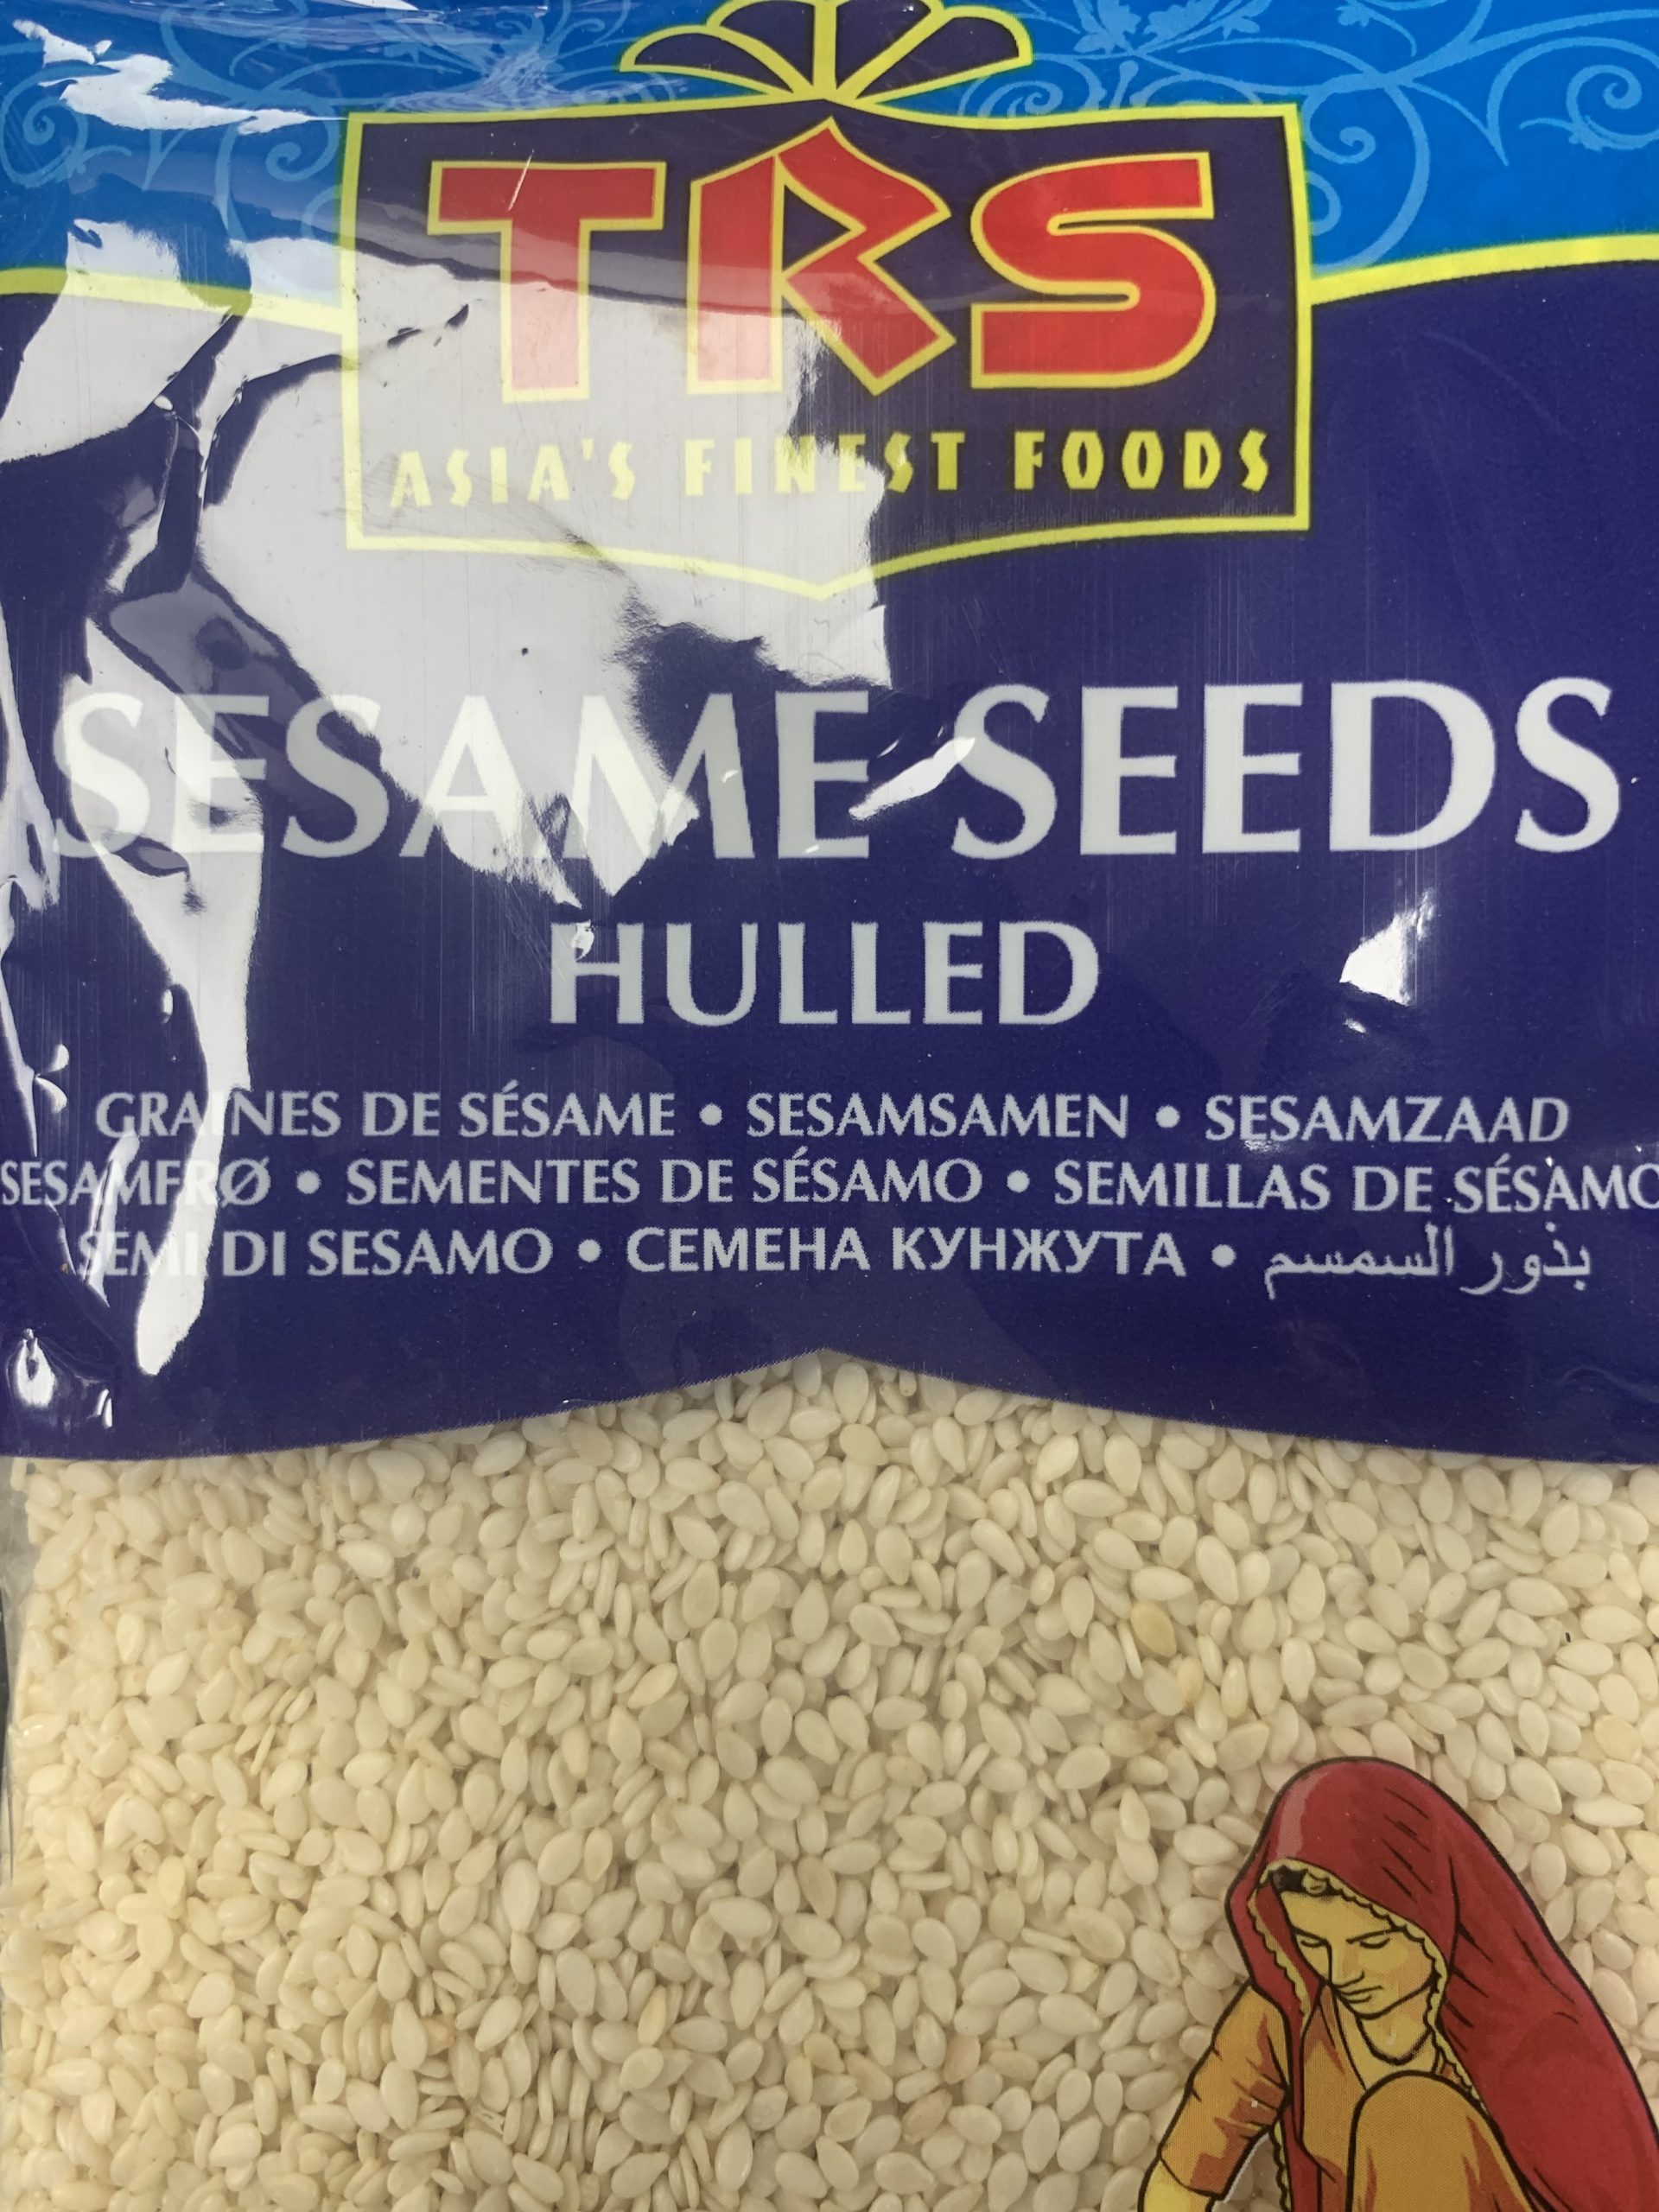 TRS Sesame Seeds 100g